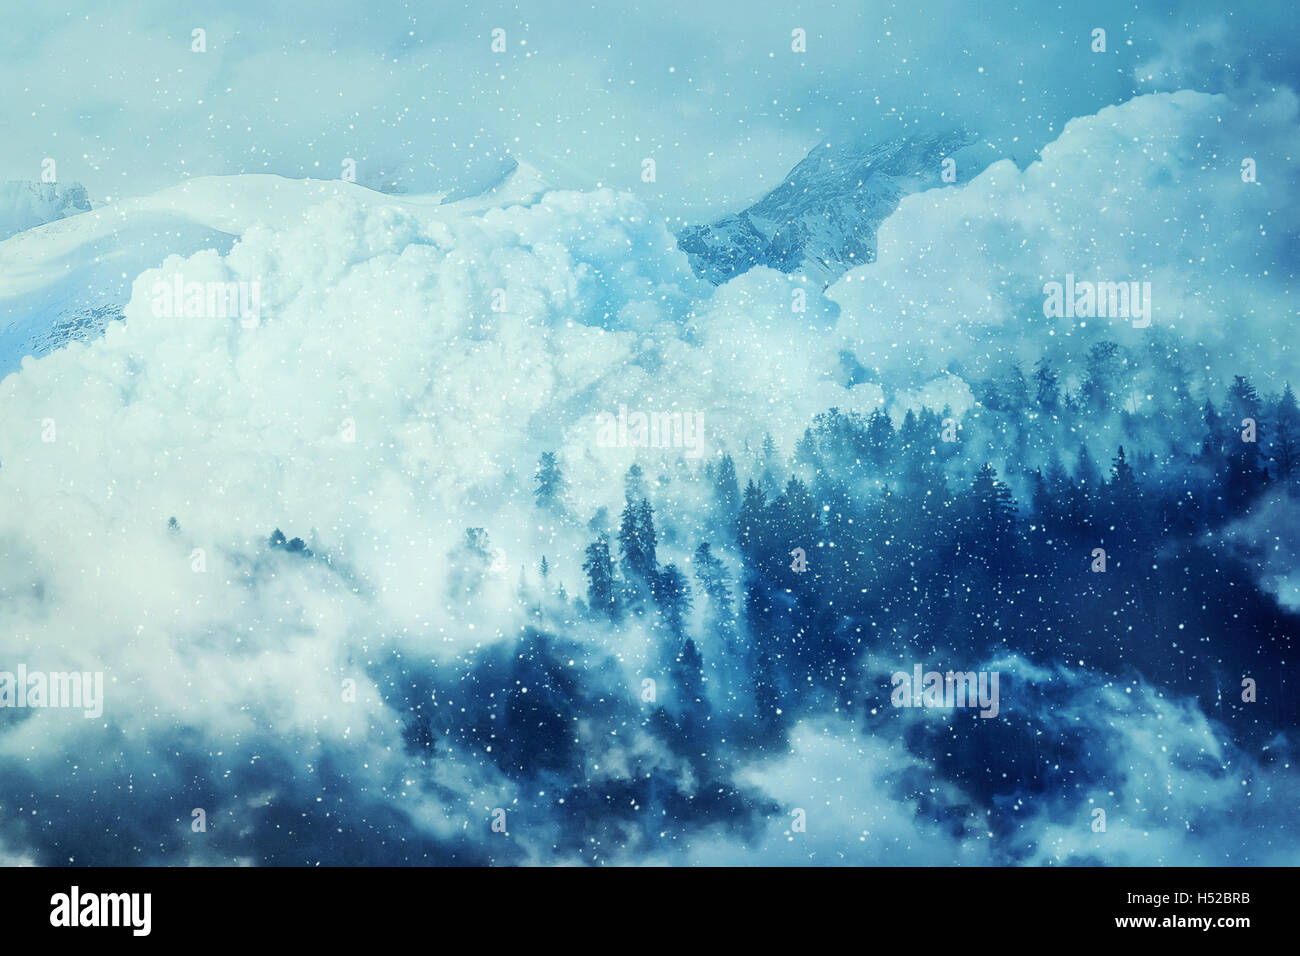 Fantastische Winter Hintergrund mit einer Lawine in den verschneiten Bergen. Schöne Landschaft Nebel und Schneefall im Tann. T Stockfoto